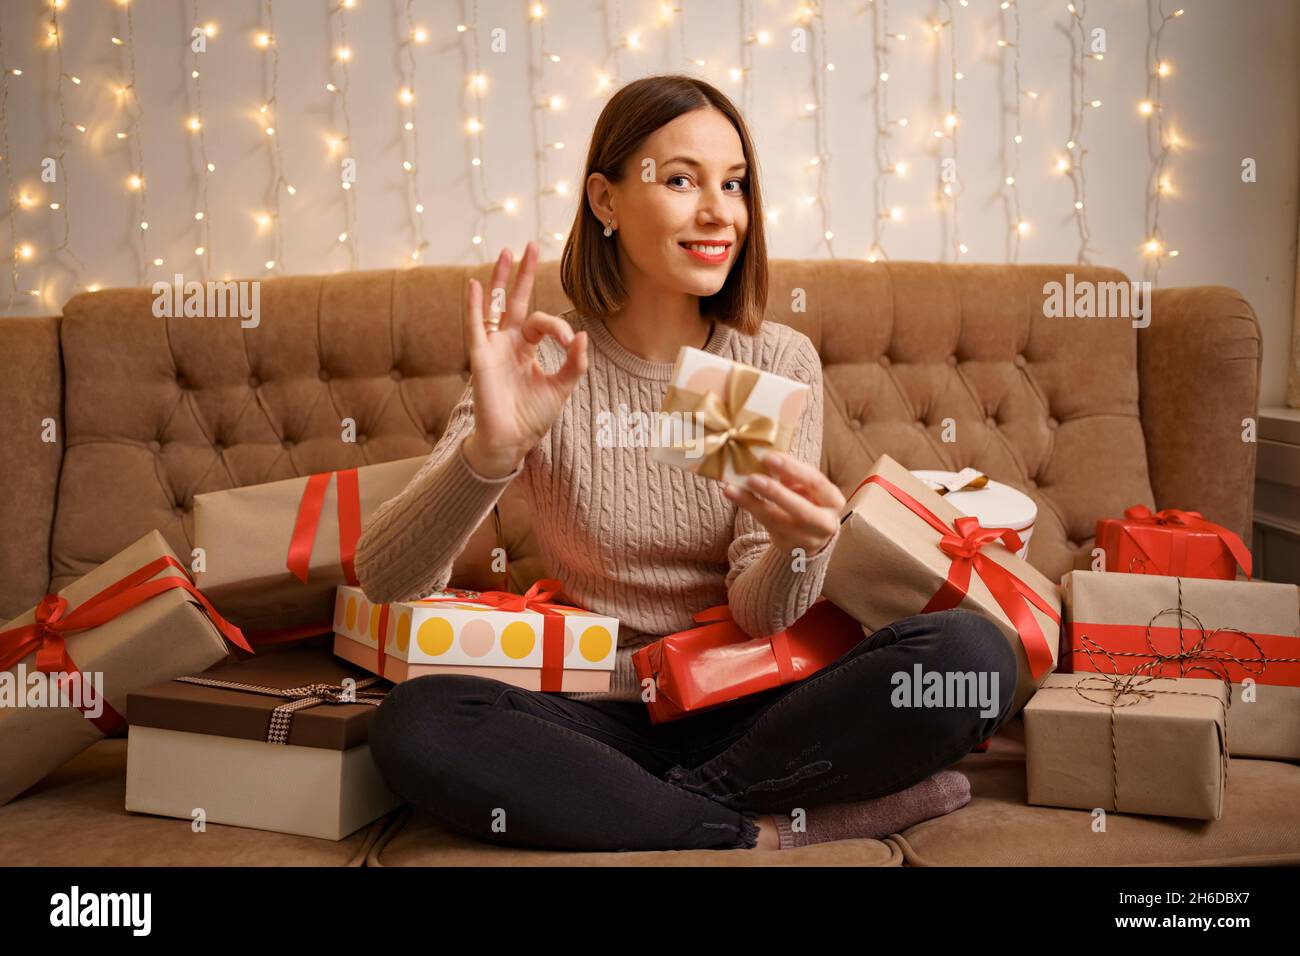 Bonne jeune femme tenant un cadeau montrant le signe ok entouré de boîtes-cadeaux assis jambes croisées sur un canapé de chameau avec des lumières en arrière-plan Banque D'Images